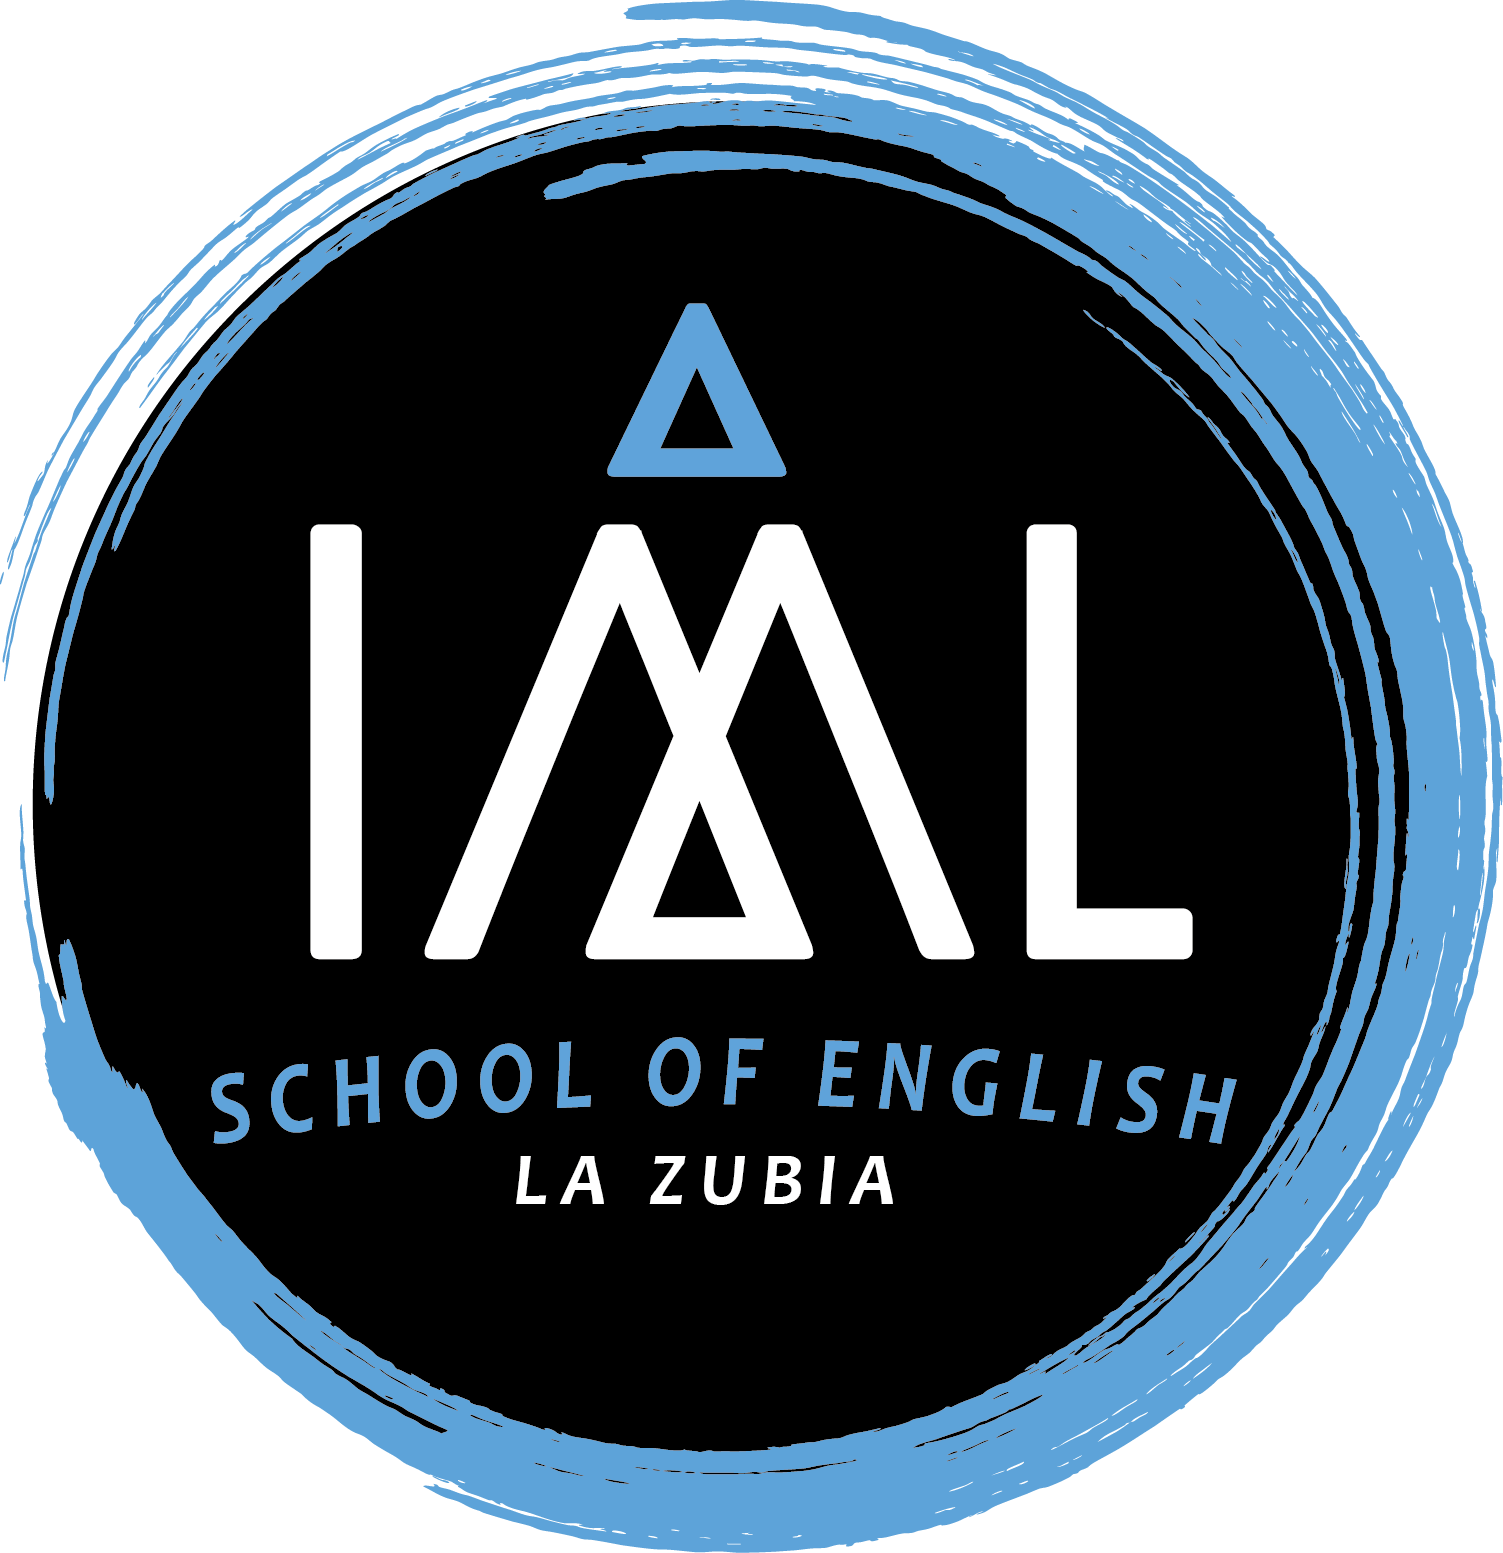 Academia de inglés IML La Zubia School of English